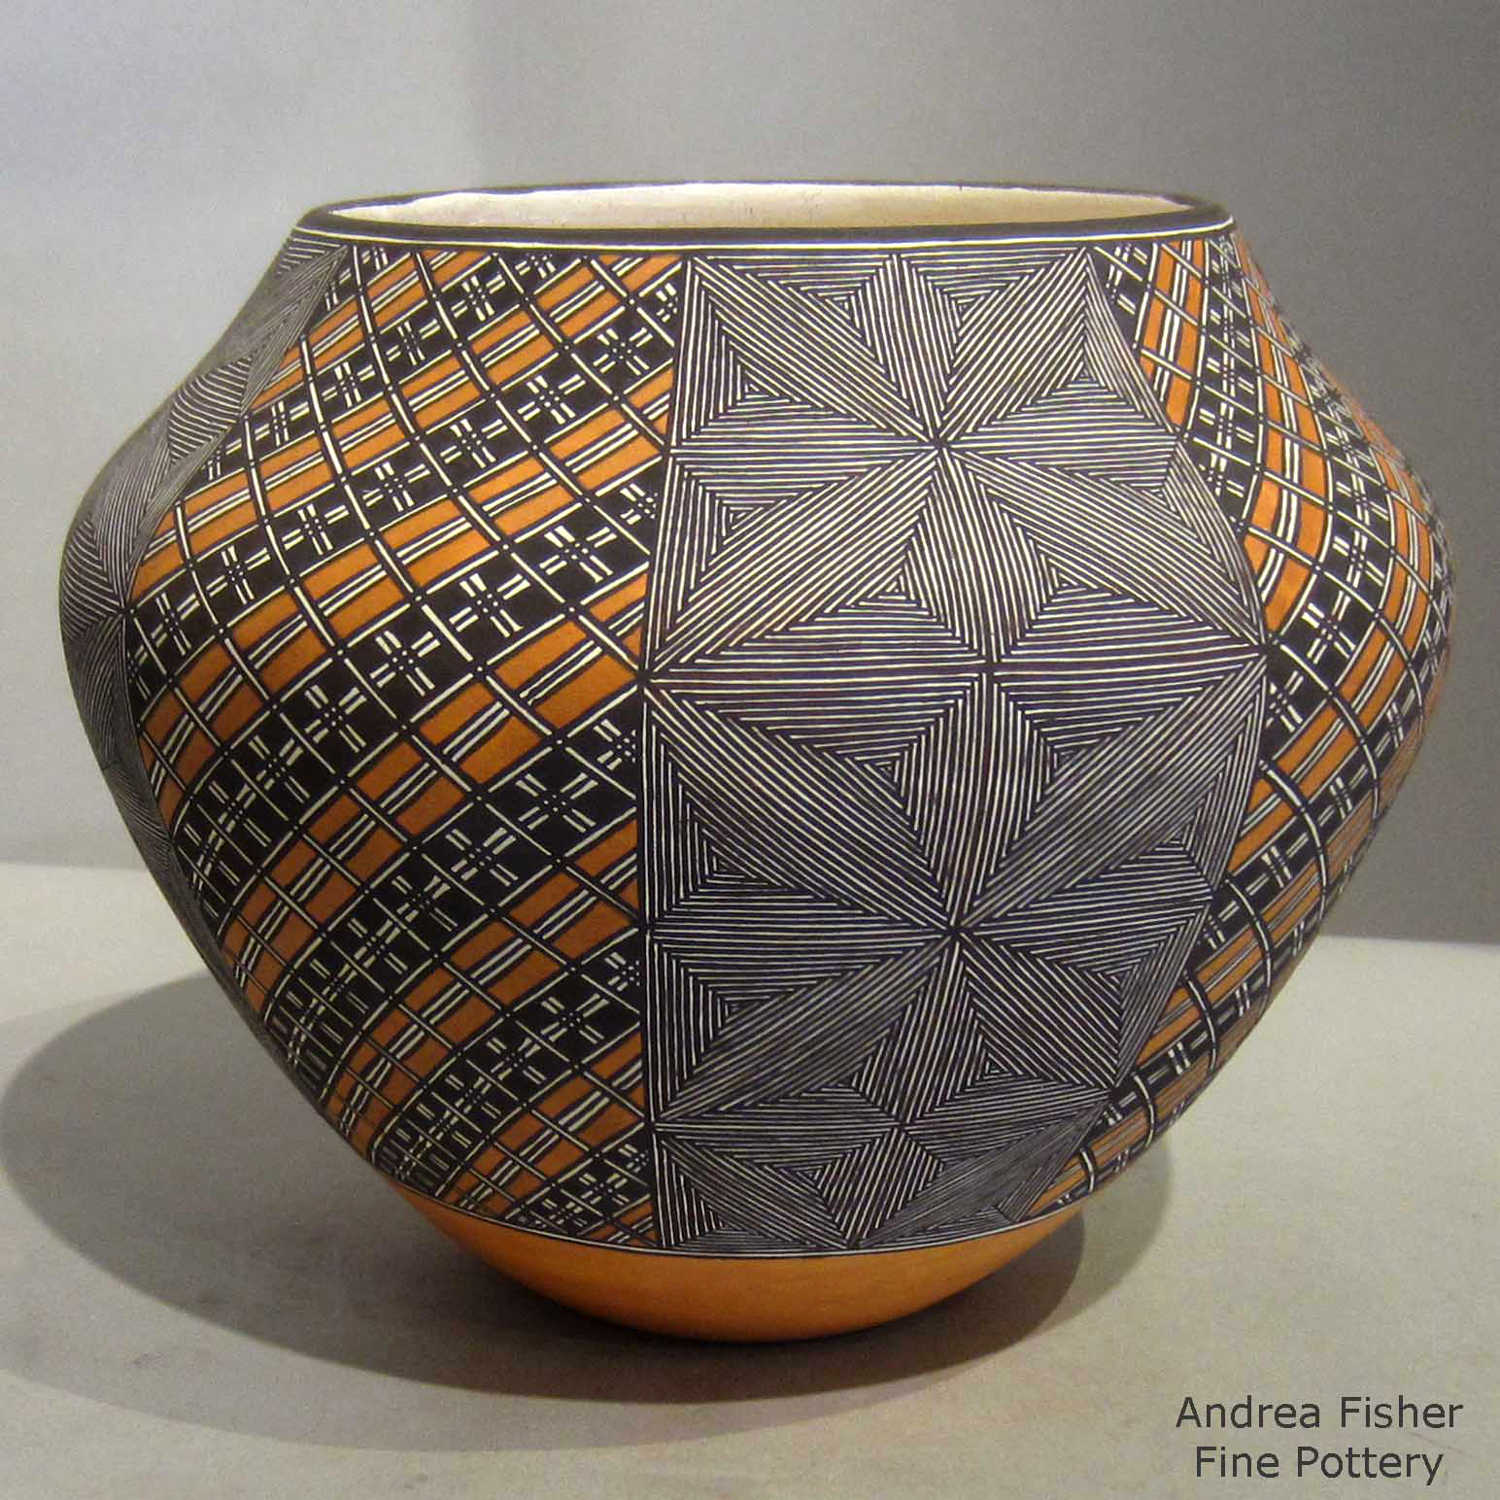 Top Curve : Jar – E.Lo Ceramic Art